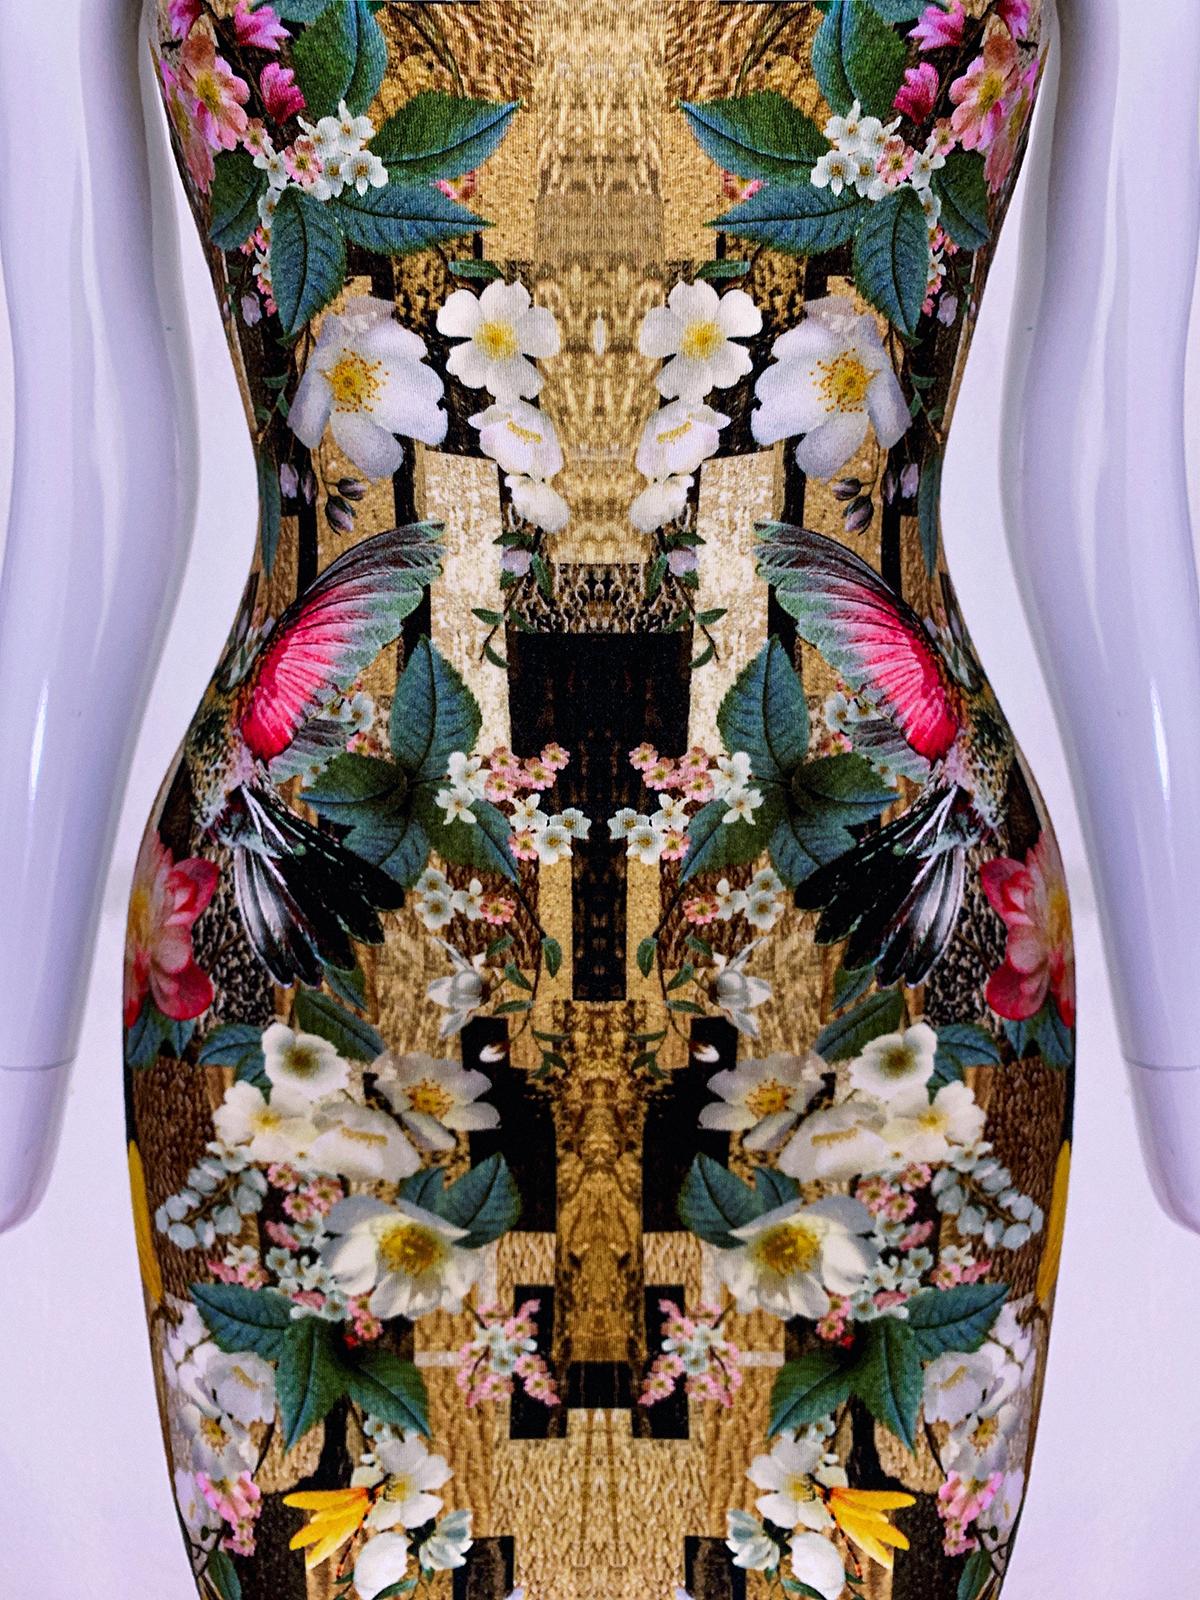 Superbe robe ajustée Alexander McQueen avec un magnifique imprimé kaléidoscope représentant des colibris, des libellules et des fleurs.
Arrière-plan aux tons dorés, belle construction.


Alexander McQueen
Fabriqué en Italie
marqué taille